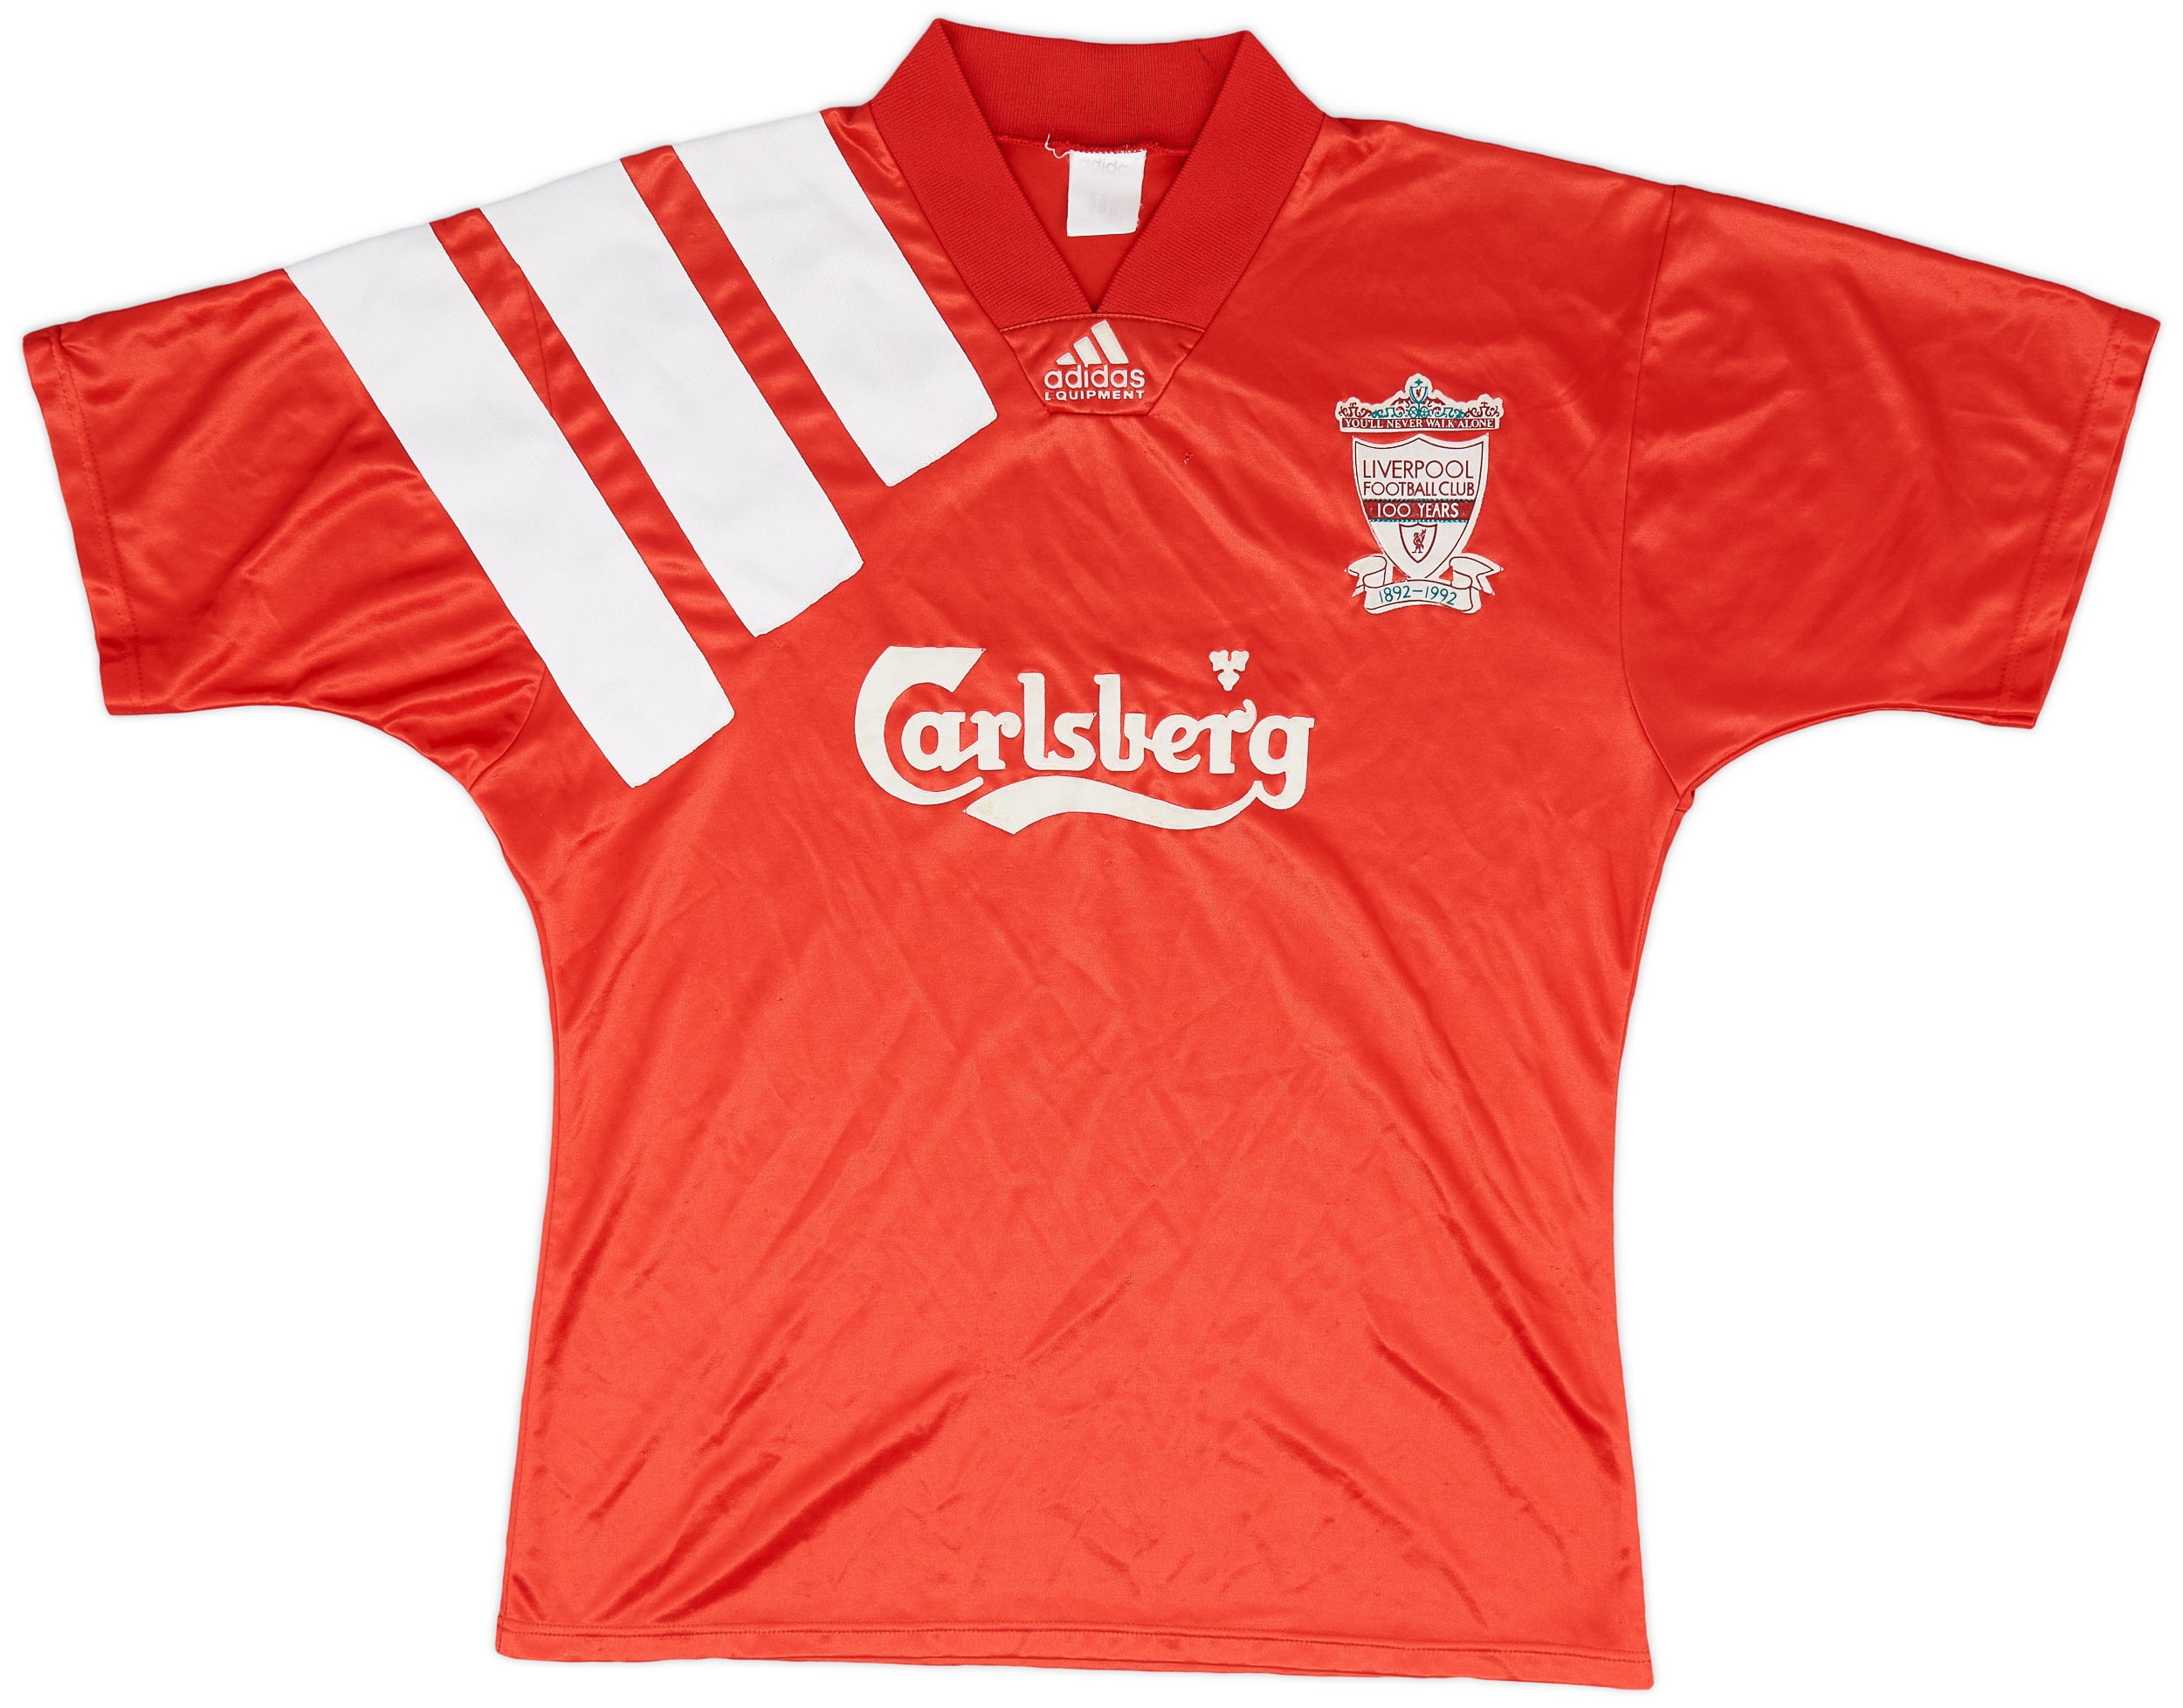 1992-93 Liverpool Centenary Home Shirt - 5/10 - (/)